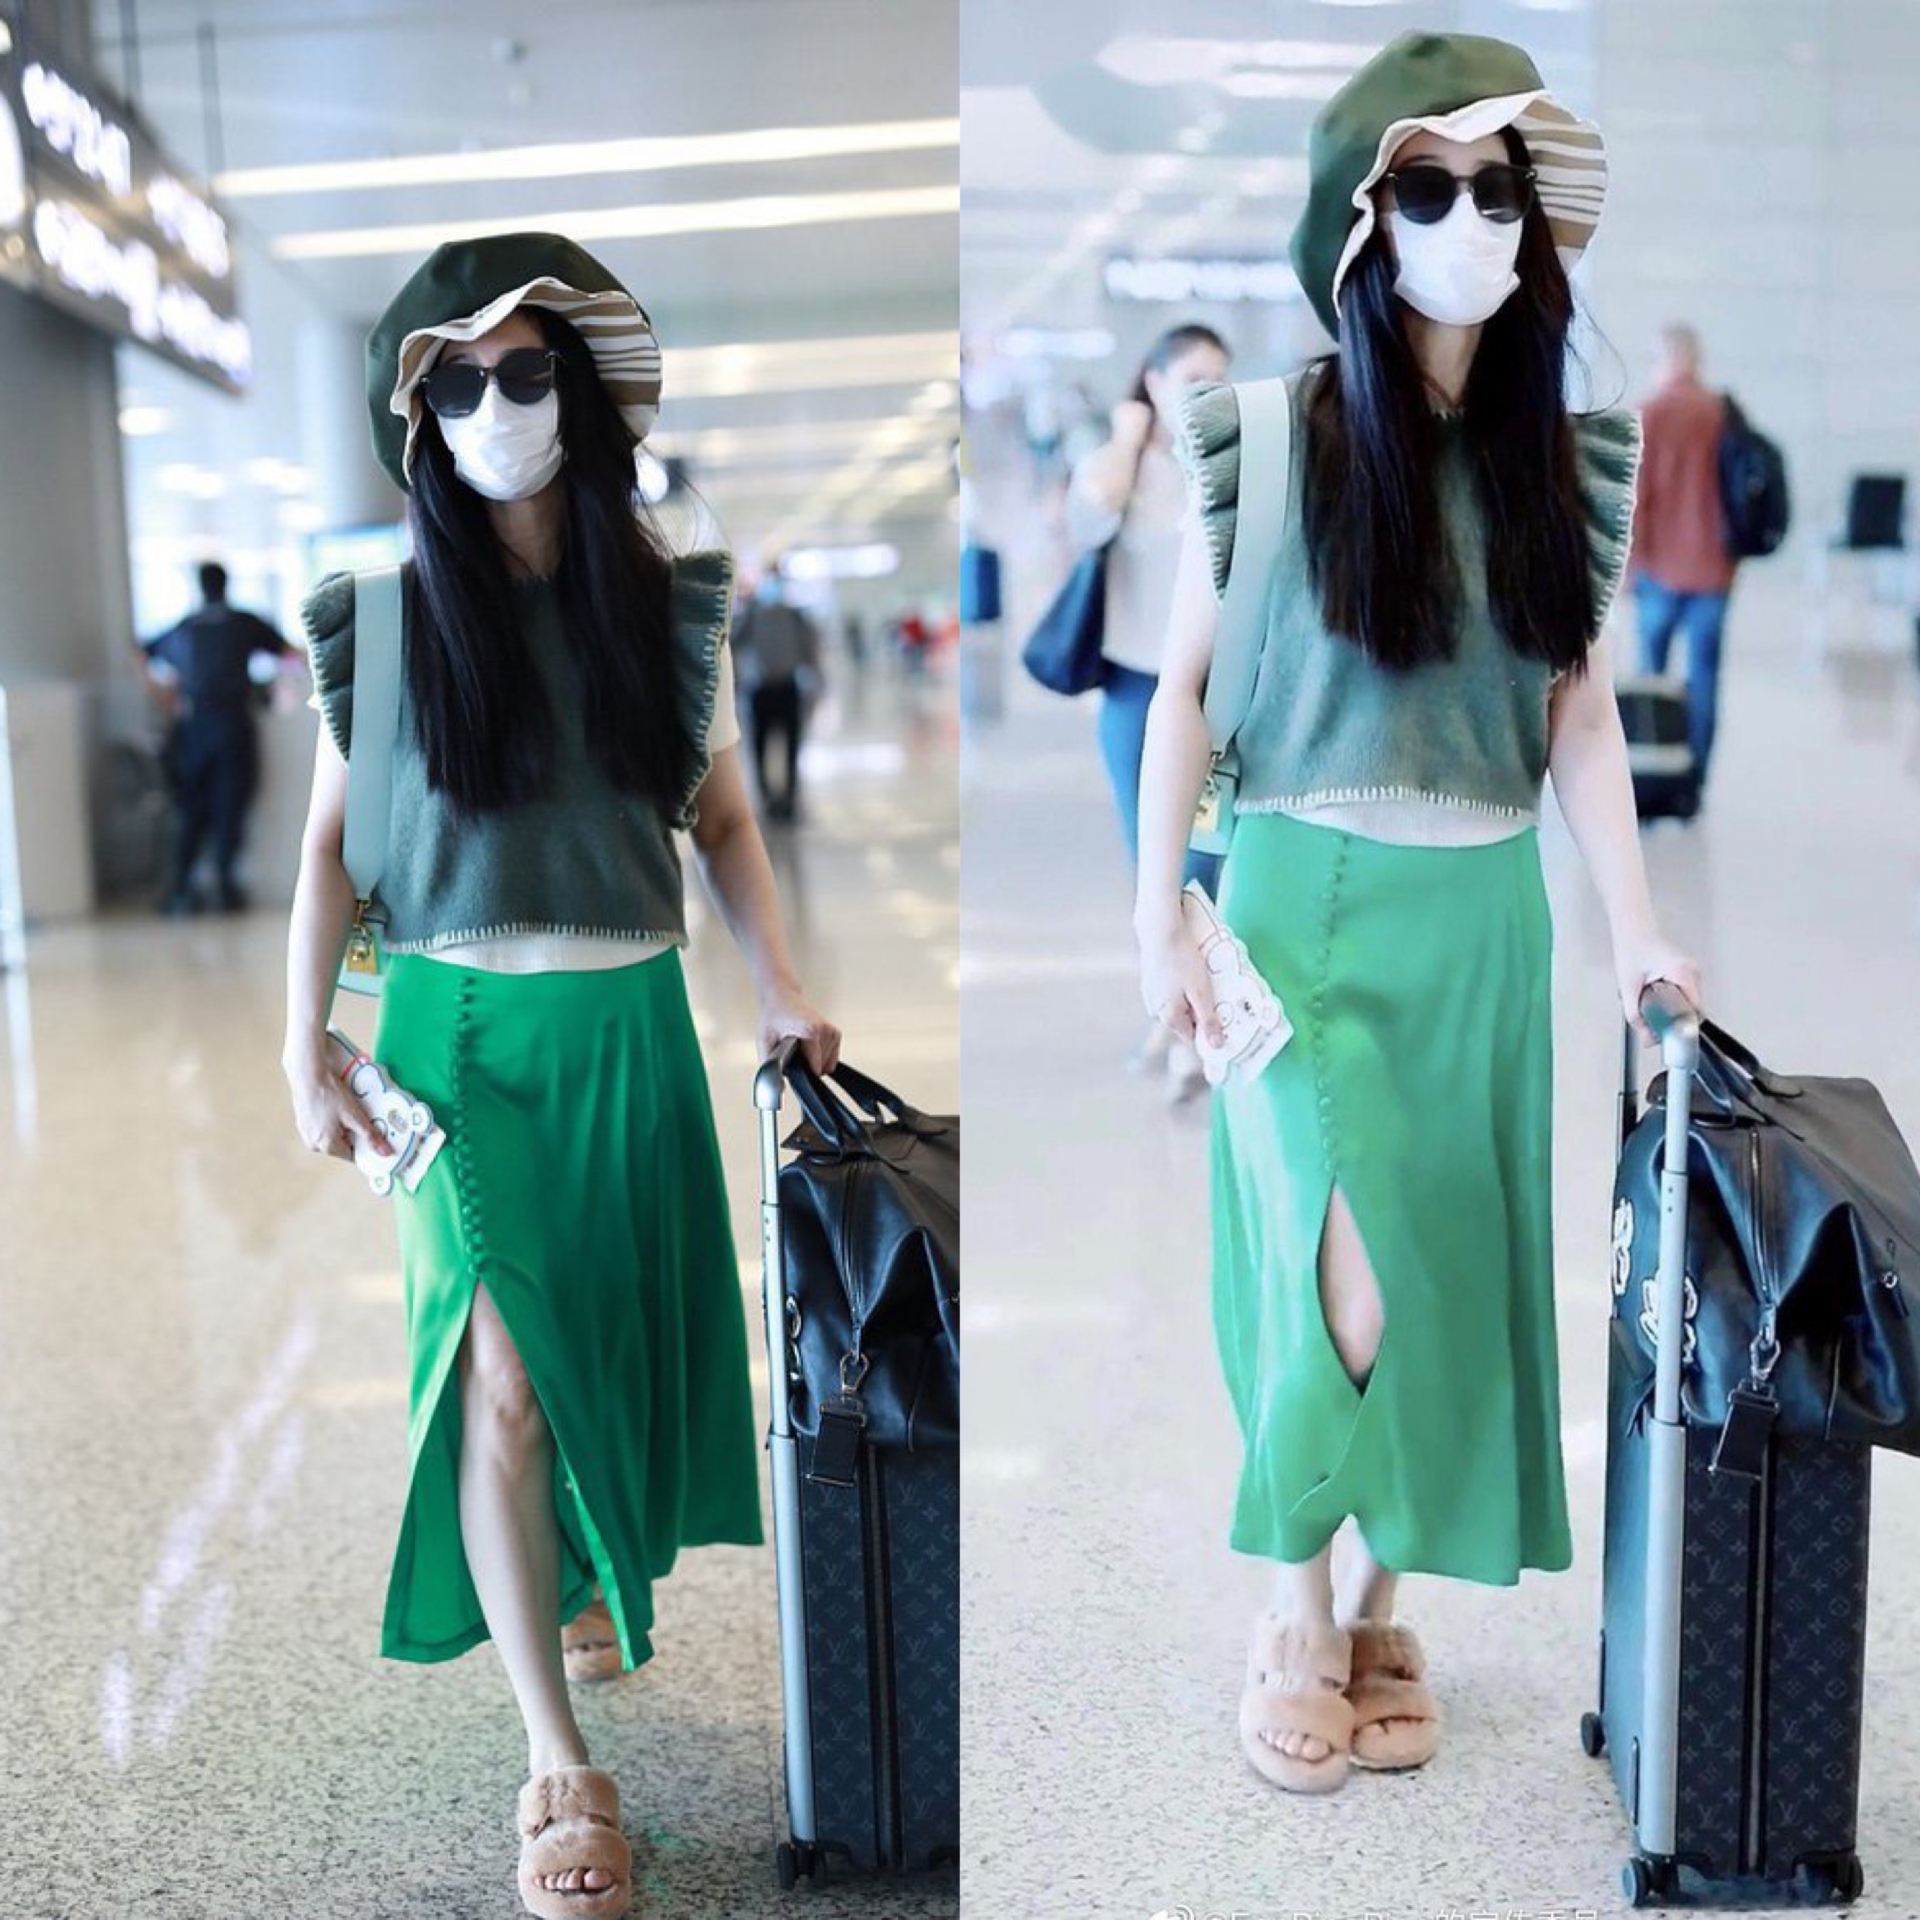 Nhìn lại thời trang sân bay trước đây của người đẹp thì netizen còn ngán ngẩm hơn. Một set đồ gồm rất nhiều item 'lạc quẻ' kết hợp với nhau tạo nên một phong cách thời trang kì lạ và không thể gọi tên.